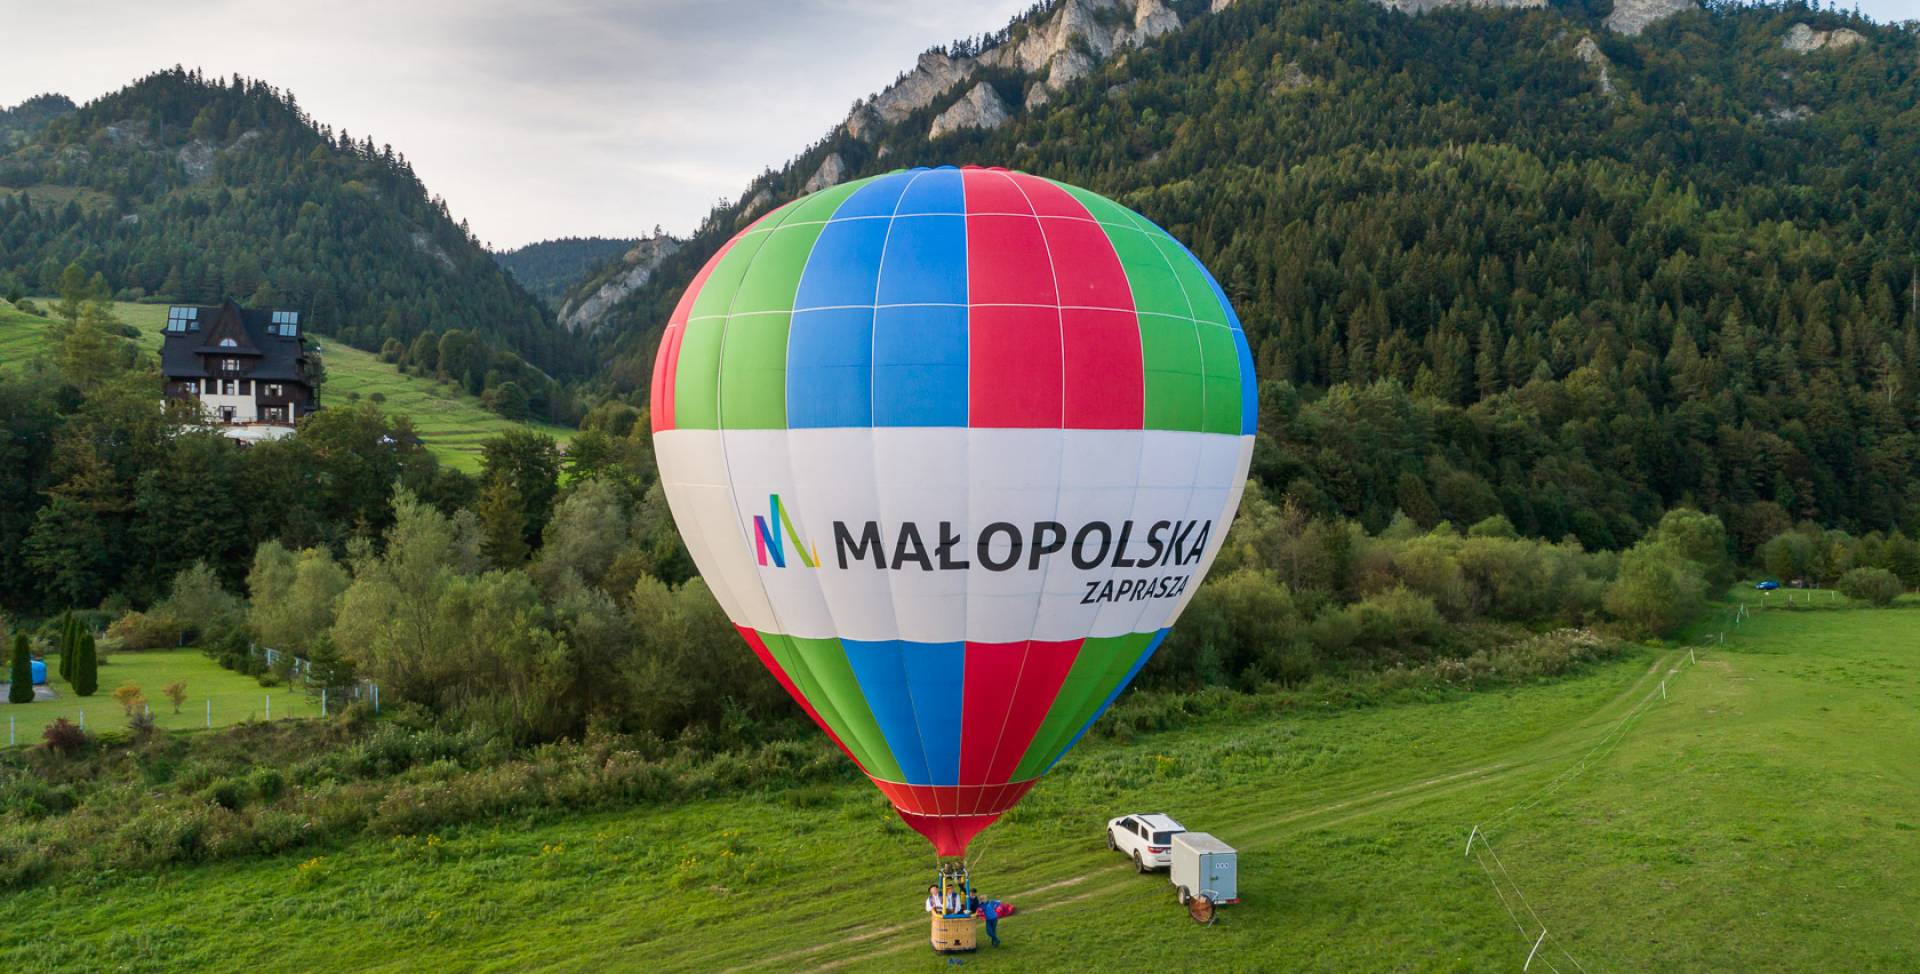 "Odlotowa Małopolska", wyjątkowa okazja, by zobaczyć balony na tle gór